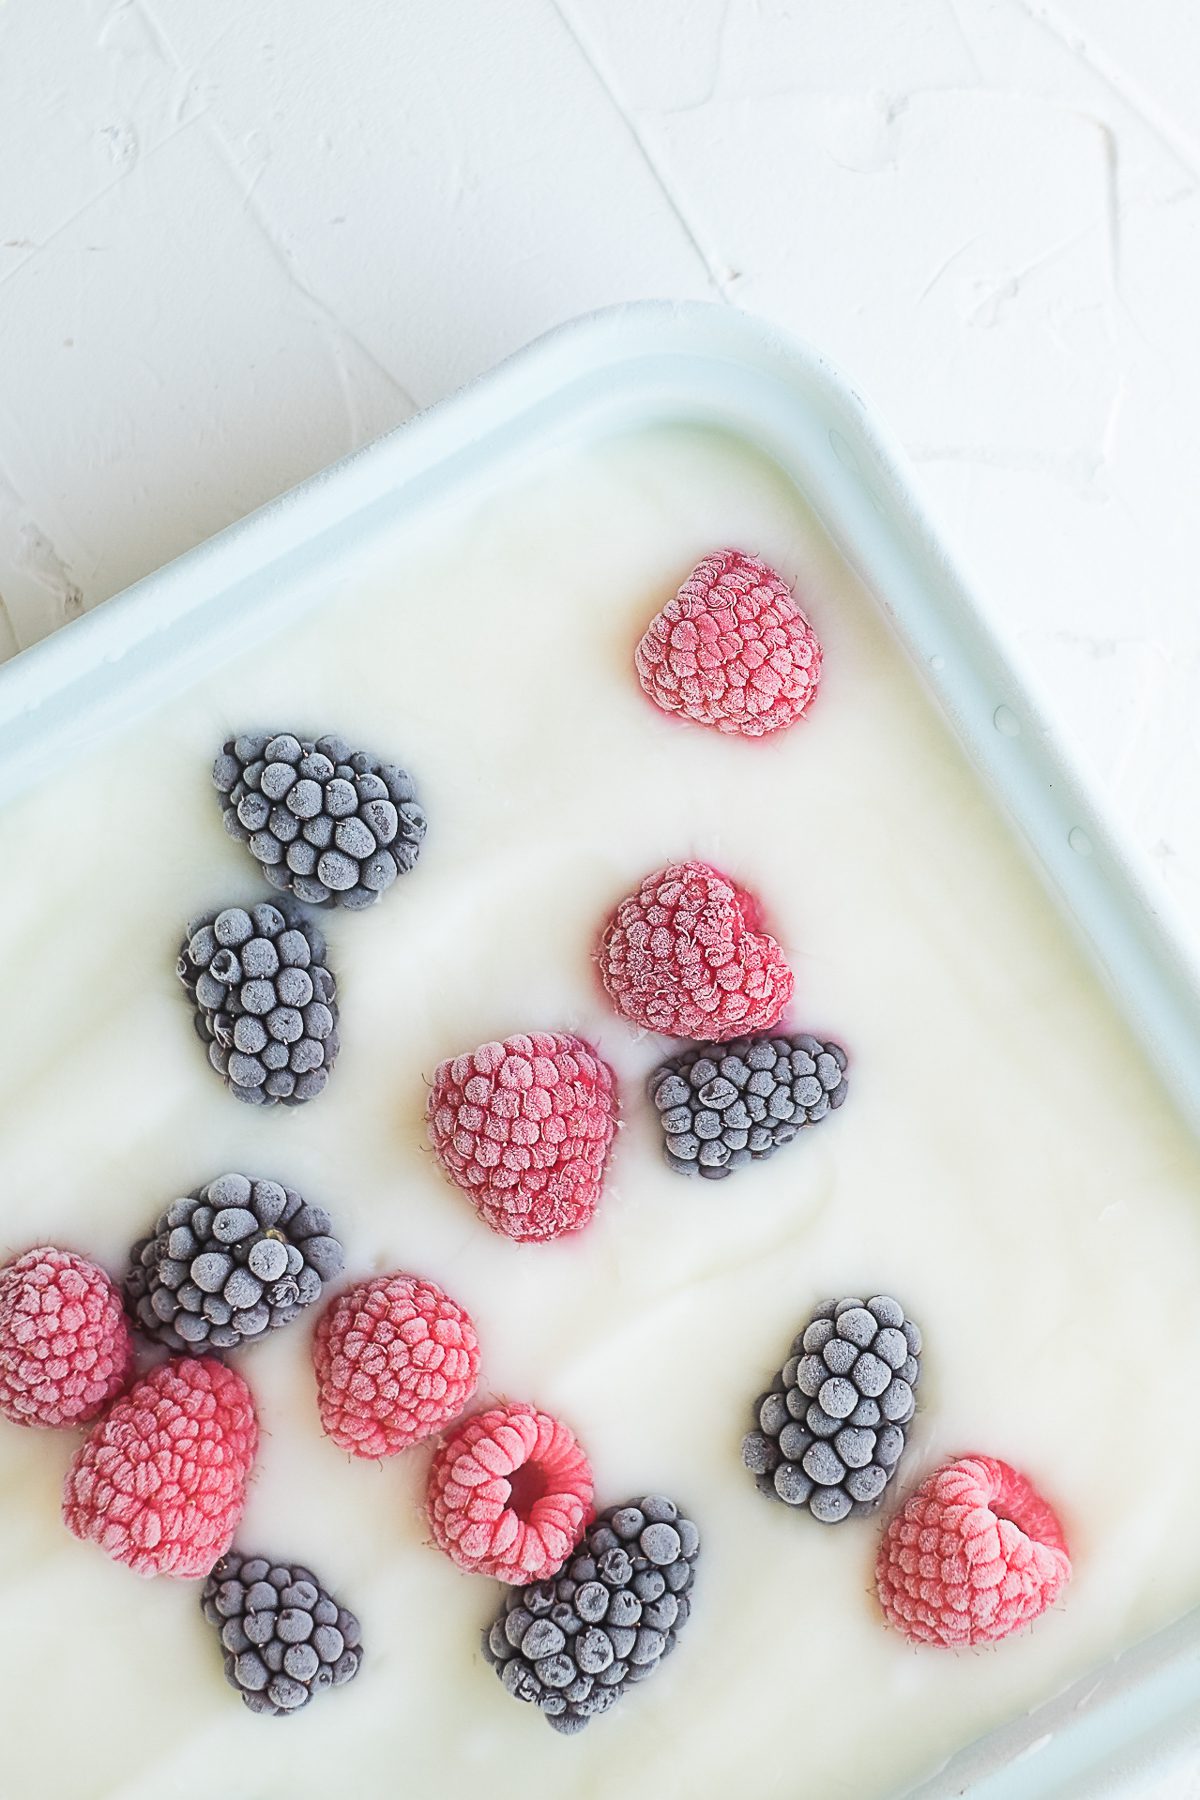 Yogurt frozen with berries in it